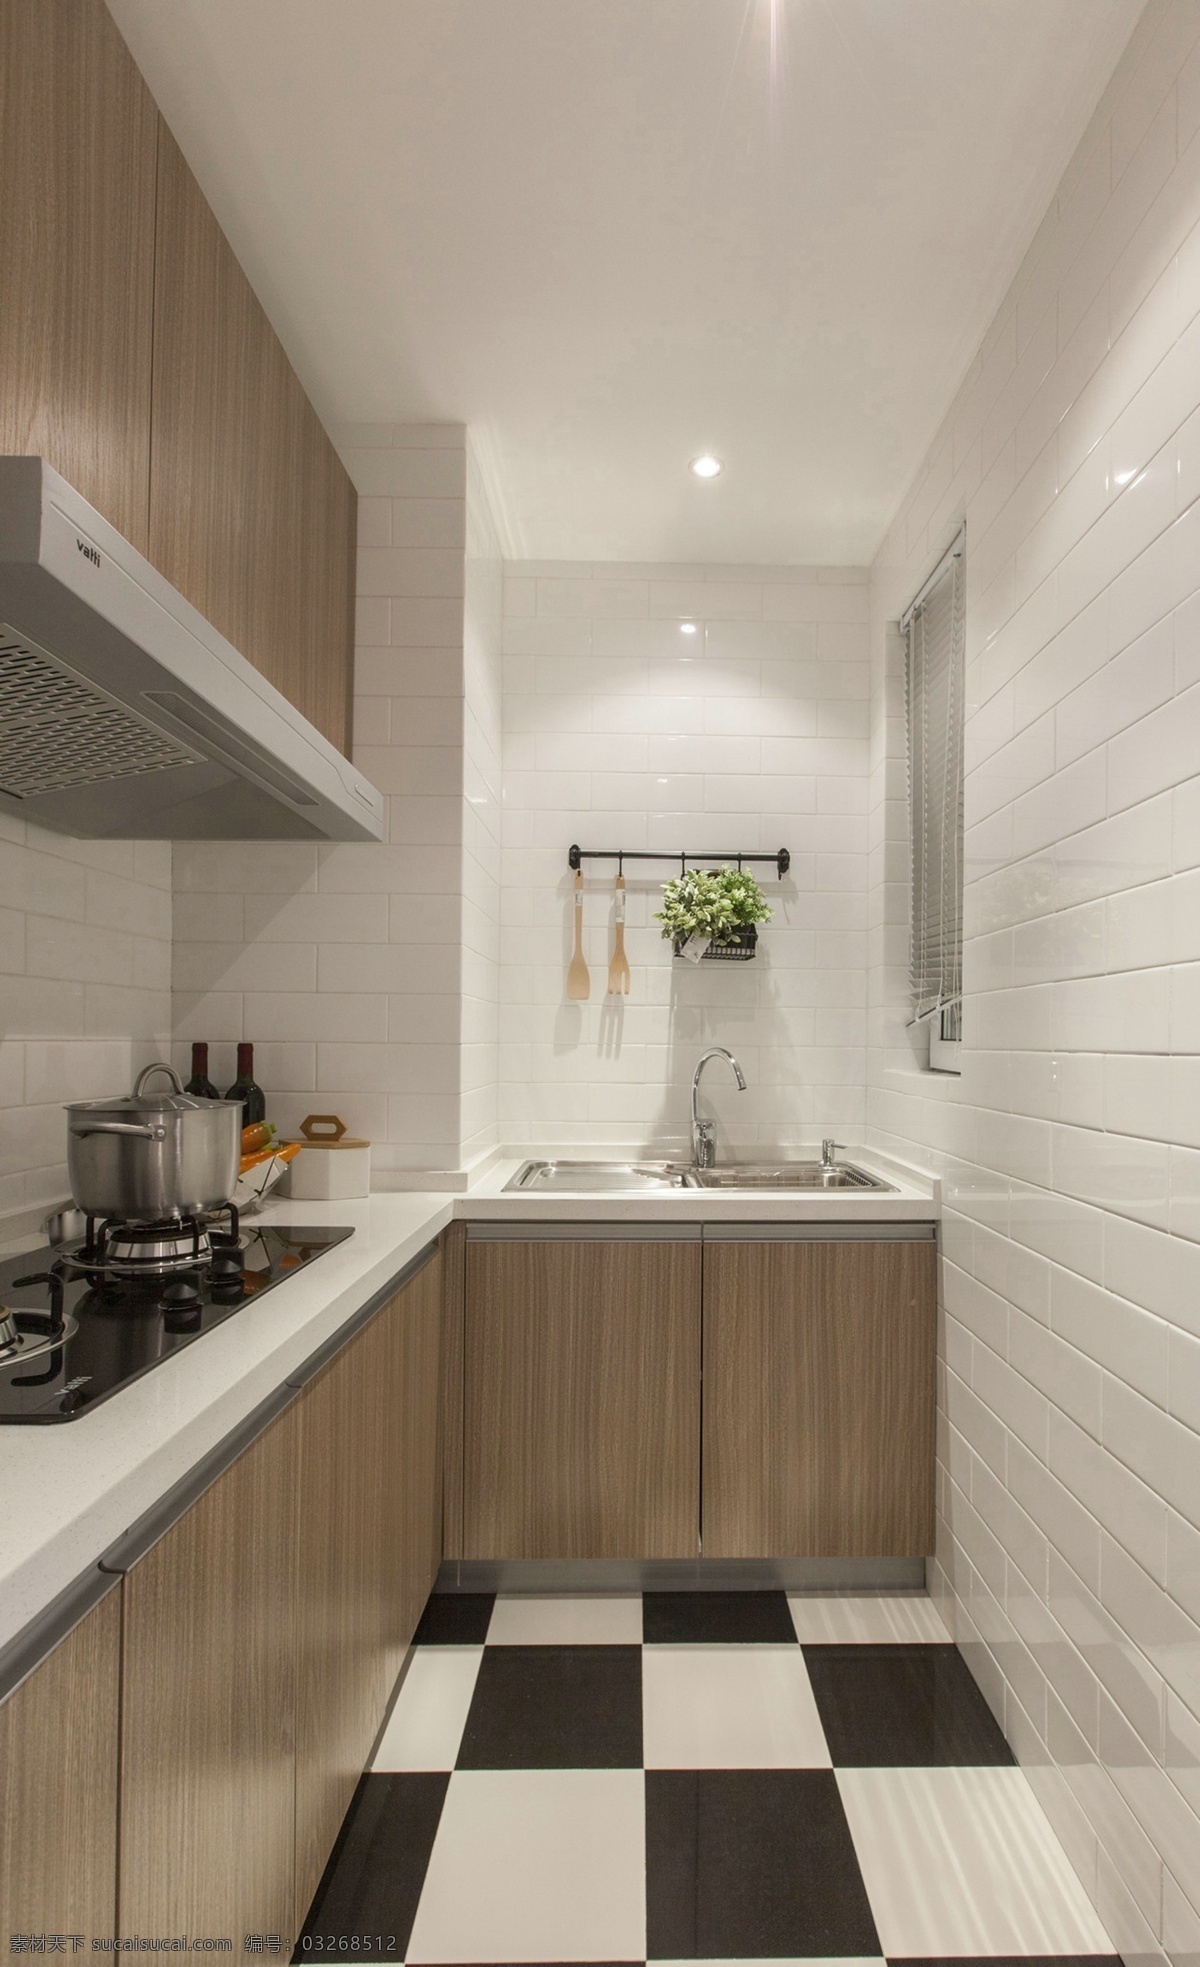 简约 时尚 厨房 格子 黑白 地板砖 装修 效果图 白色射灯 大理石 白色 台面 木质橱柜 油烟机 灶具